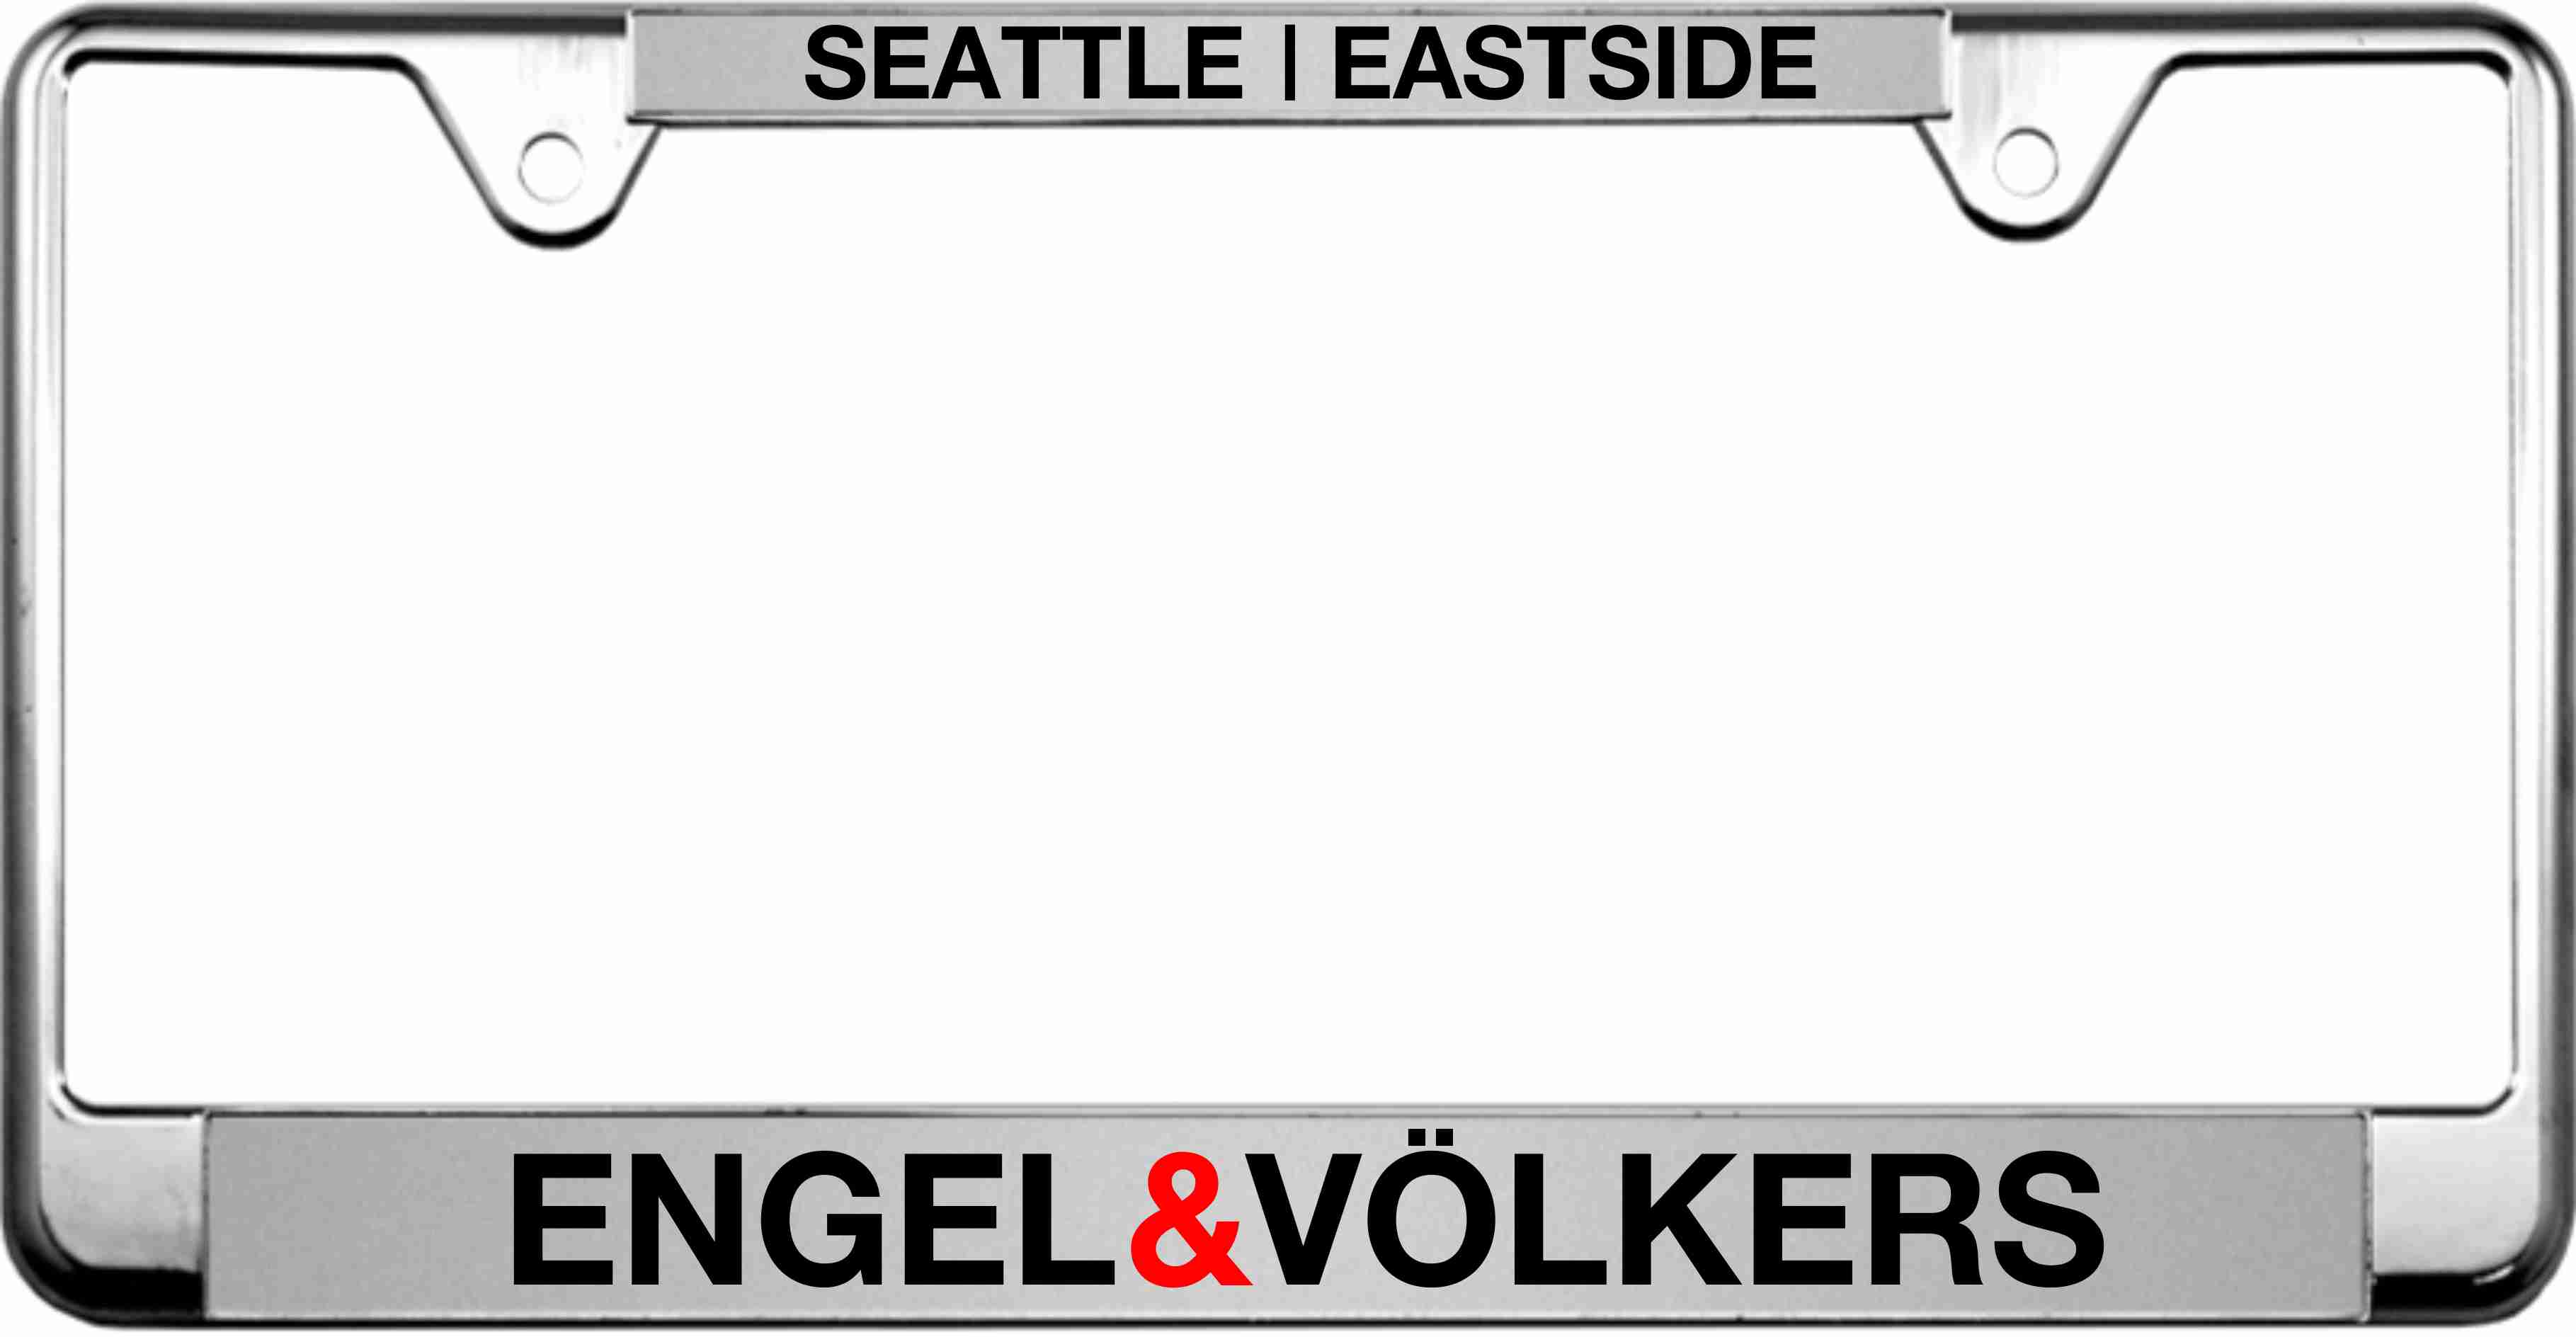 ENGEL & V?LKERS SEATTLE | EASTSIDE license plate frame